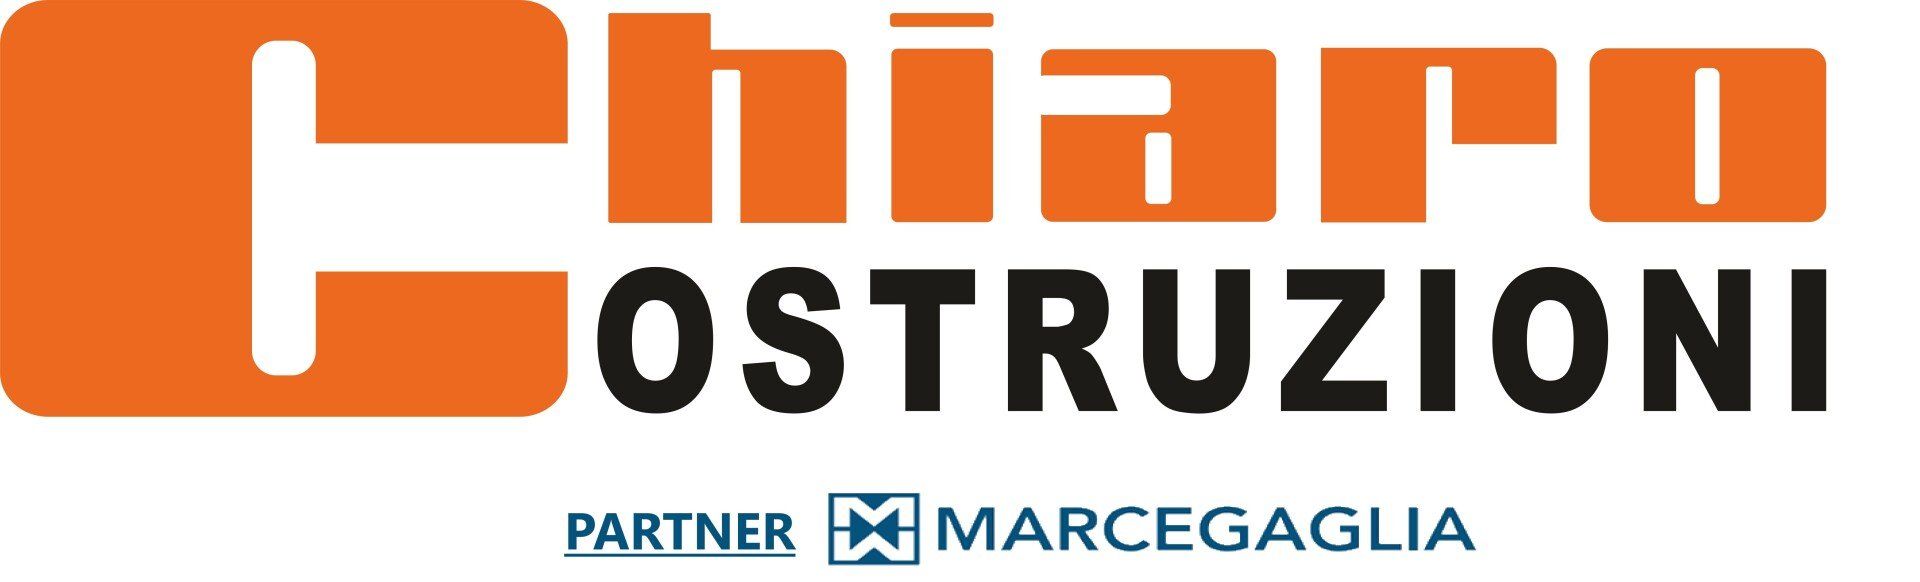 CHIARO COSTRUZIONI - Partner Marcegaglia - Noleggio Ponteggi Logo